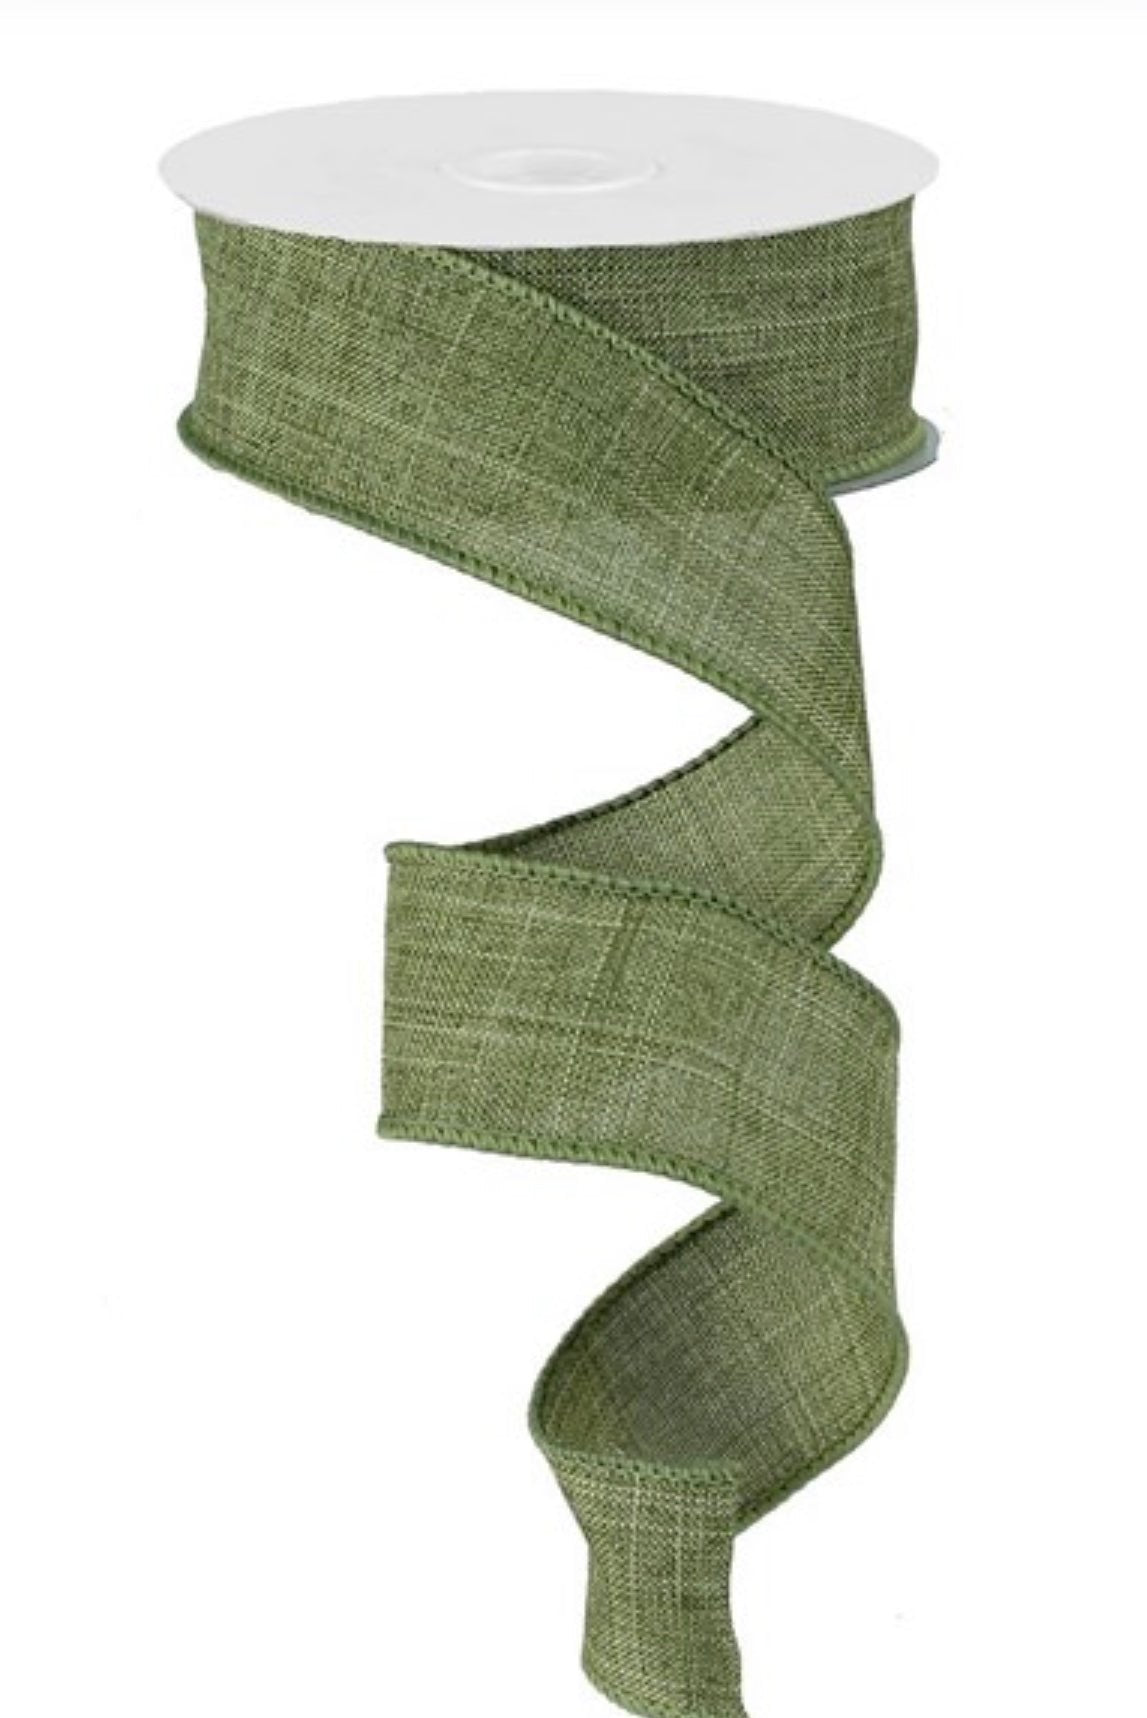 Fern green solid wired ribbon 1.5” - Greenery MarketWired ribbonRG12782Y